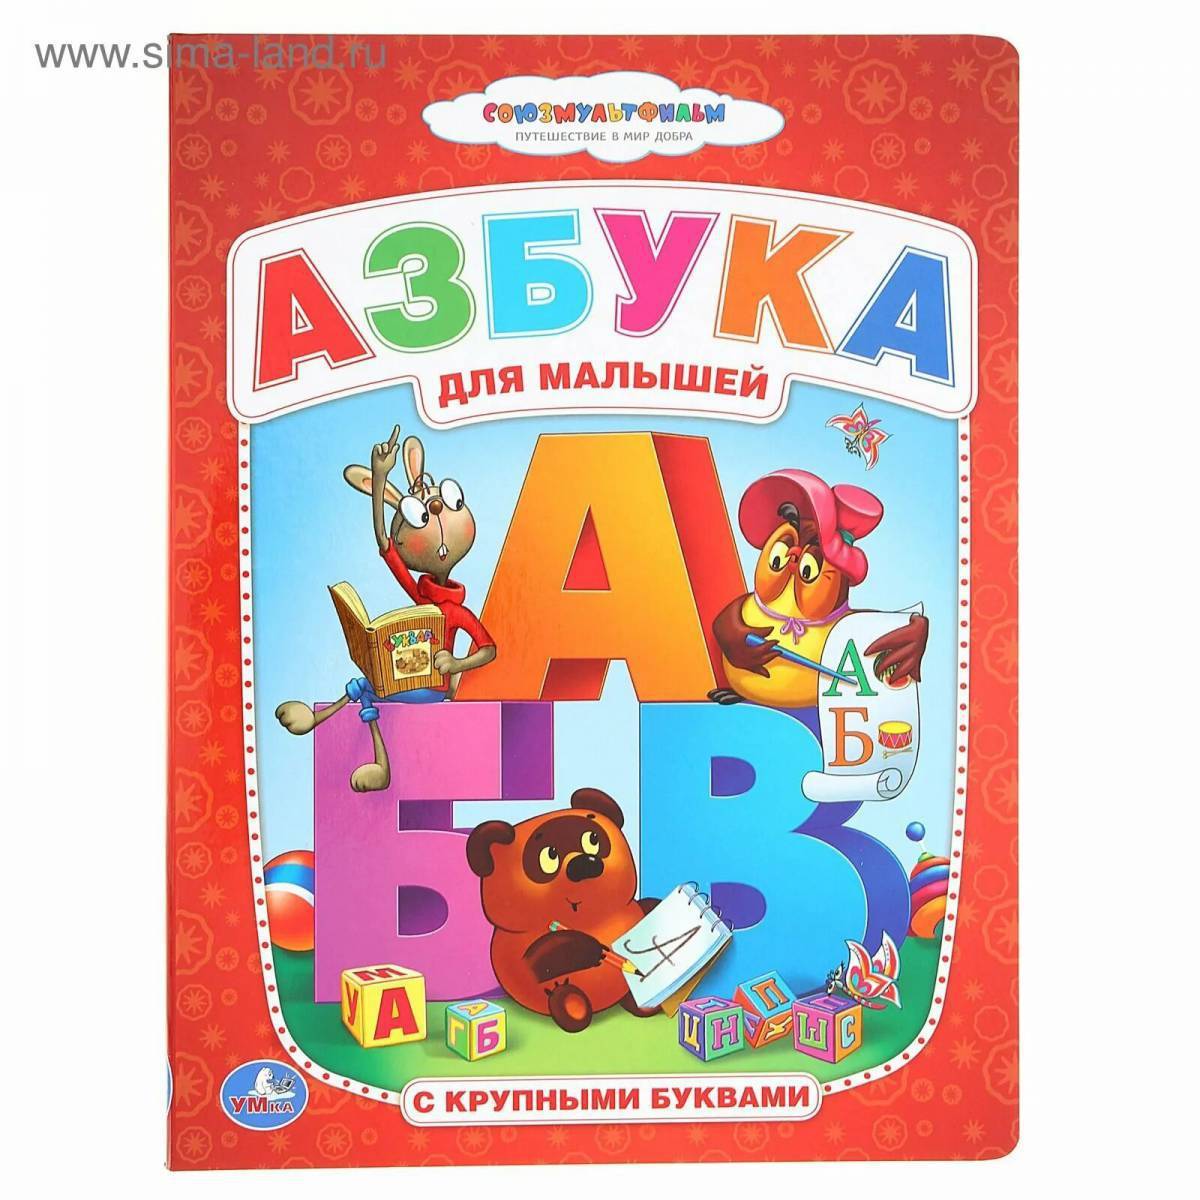 Алфавит детям отзывы. Книжка "Азбука". Азбука для малышей книга. Азбука (обложка). Алфавит книга для детей.